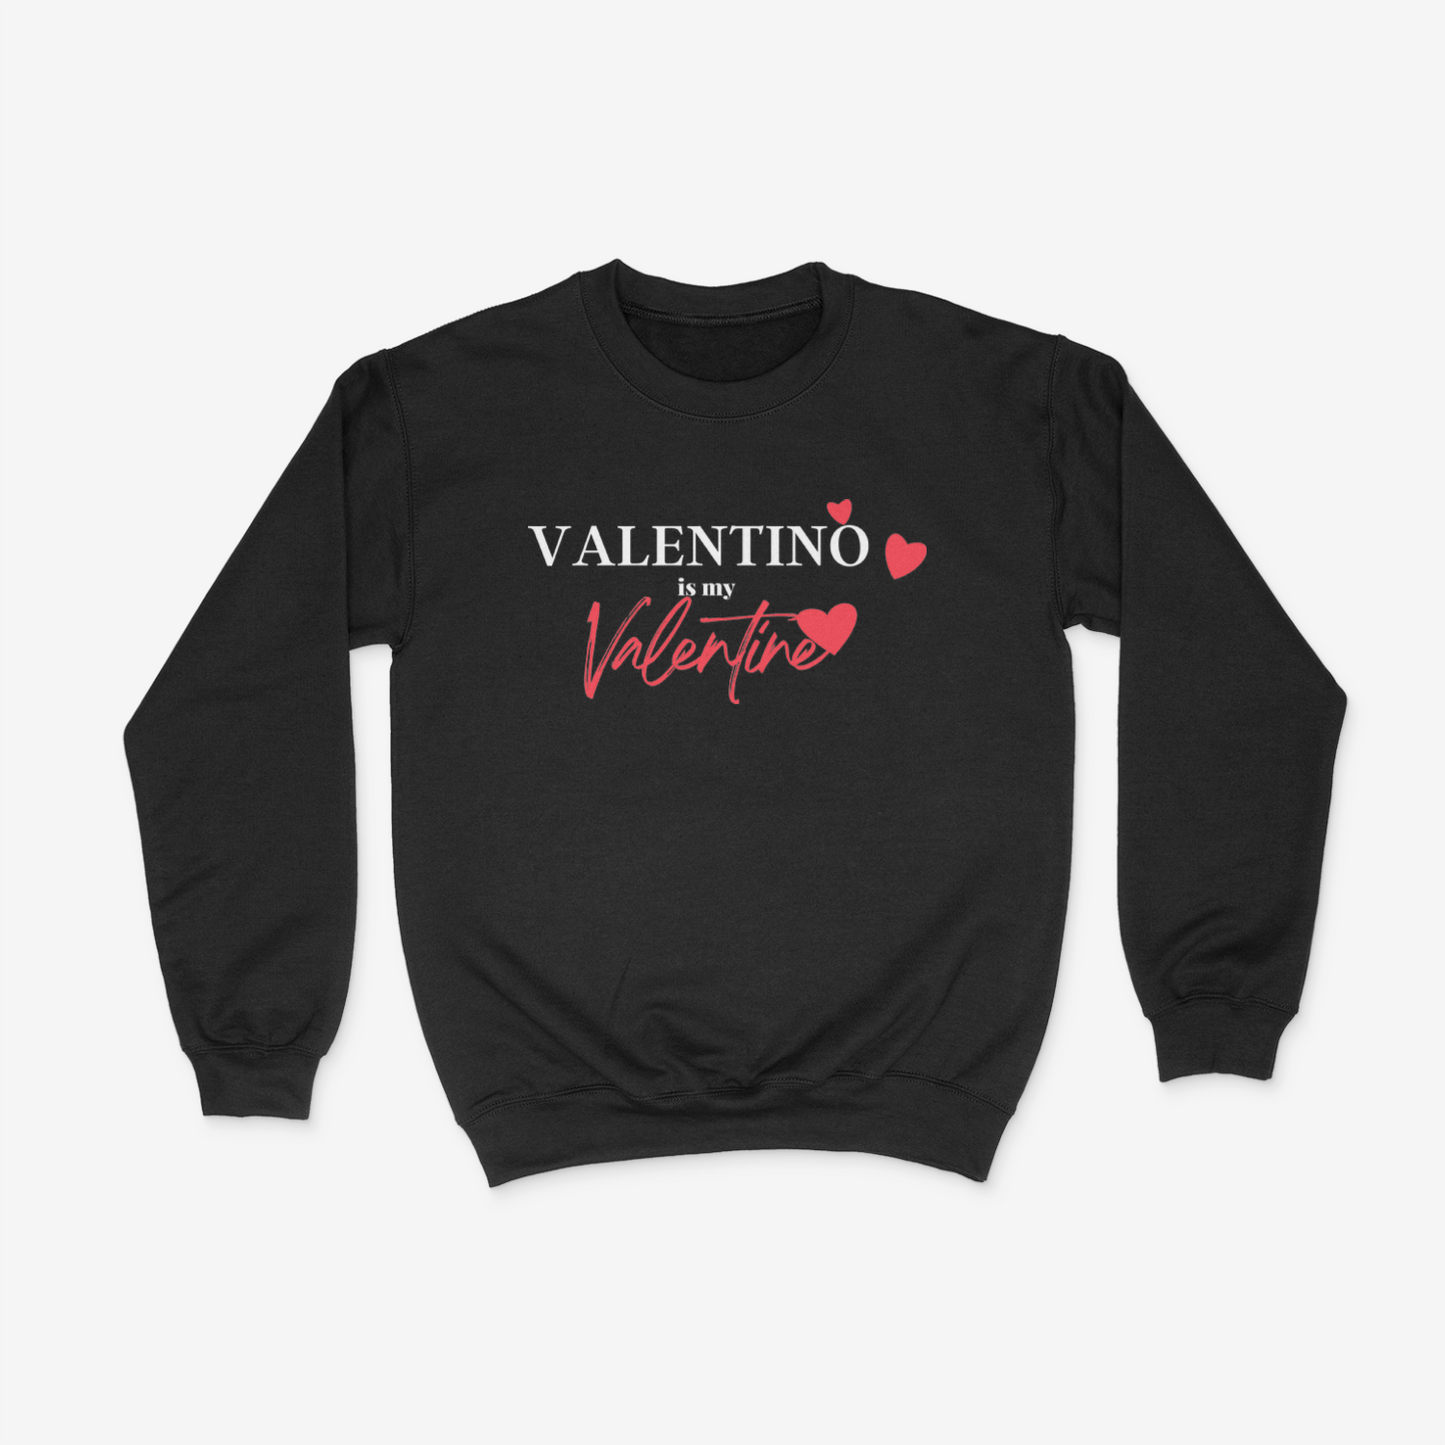 Valentino is my Valentine